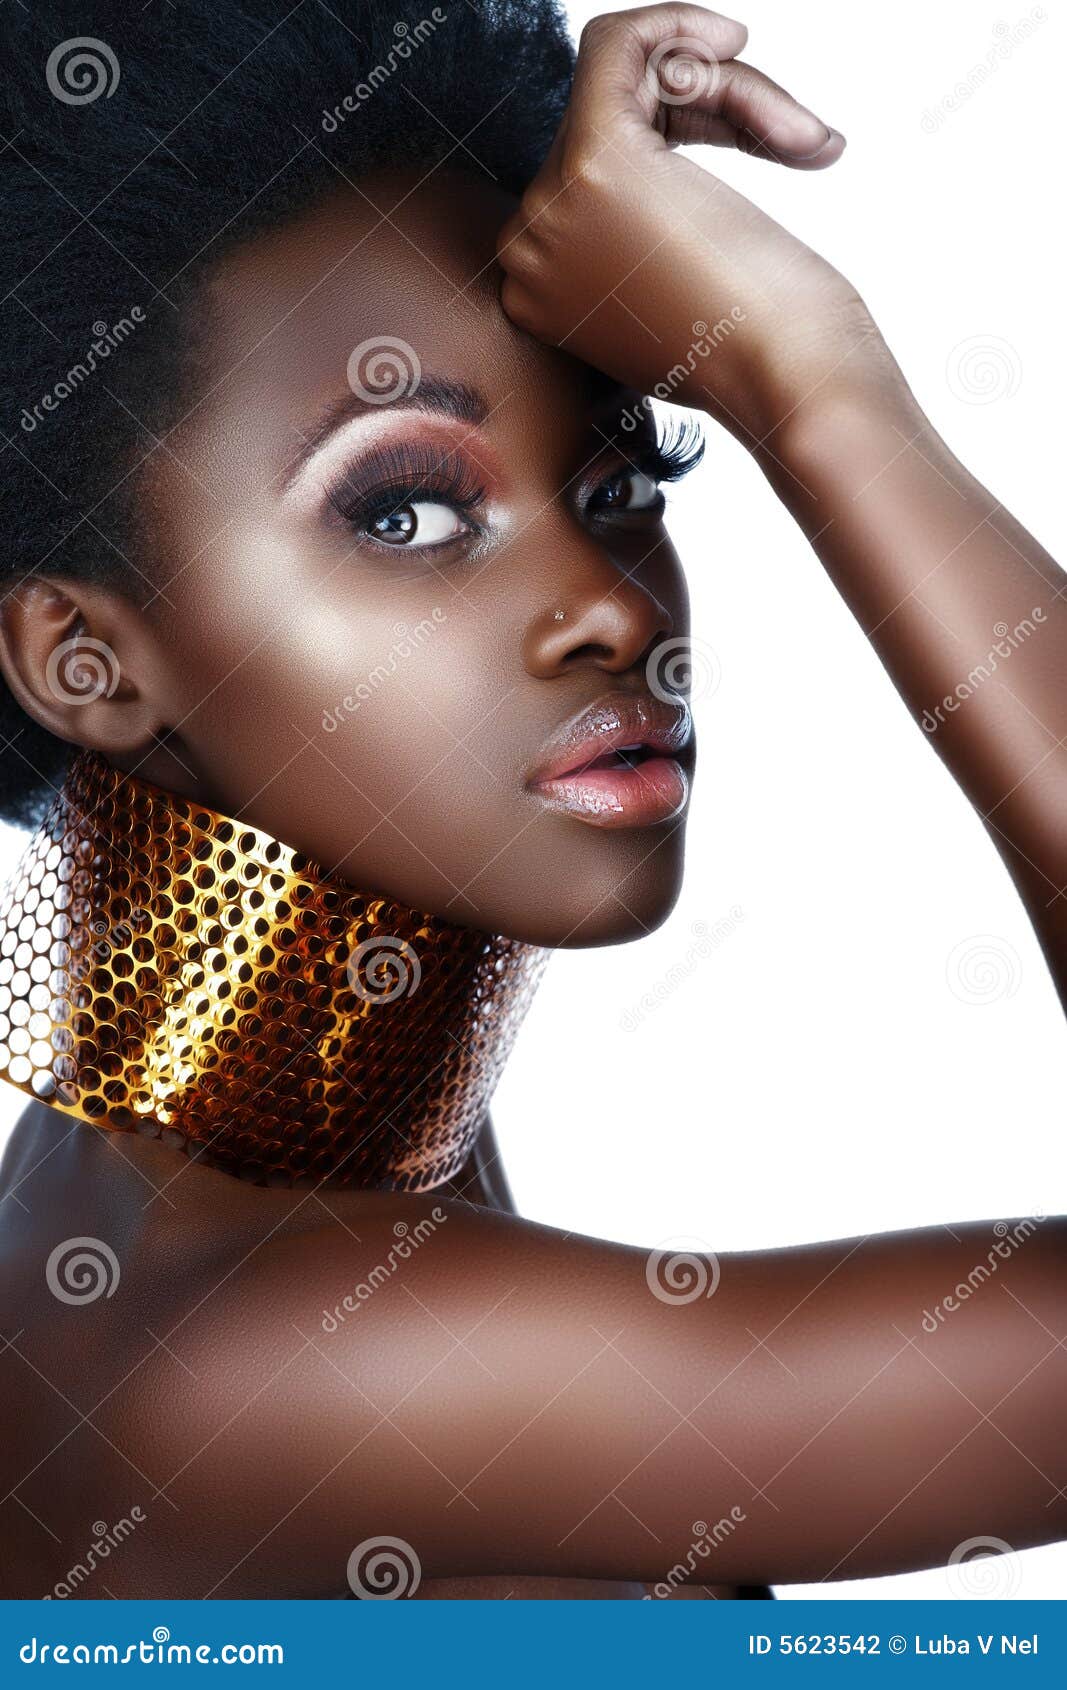 Ebony girls african south Born Free,